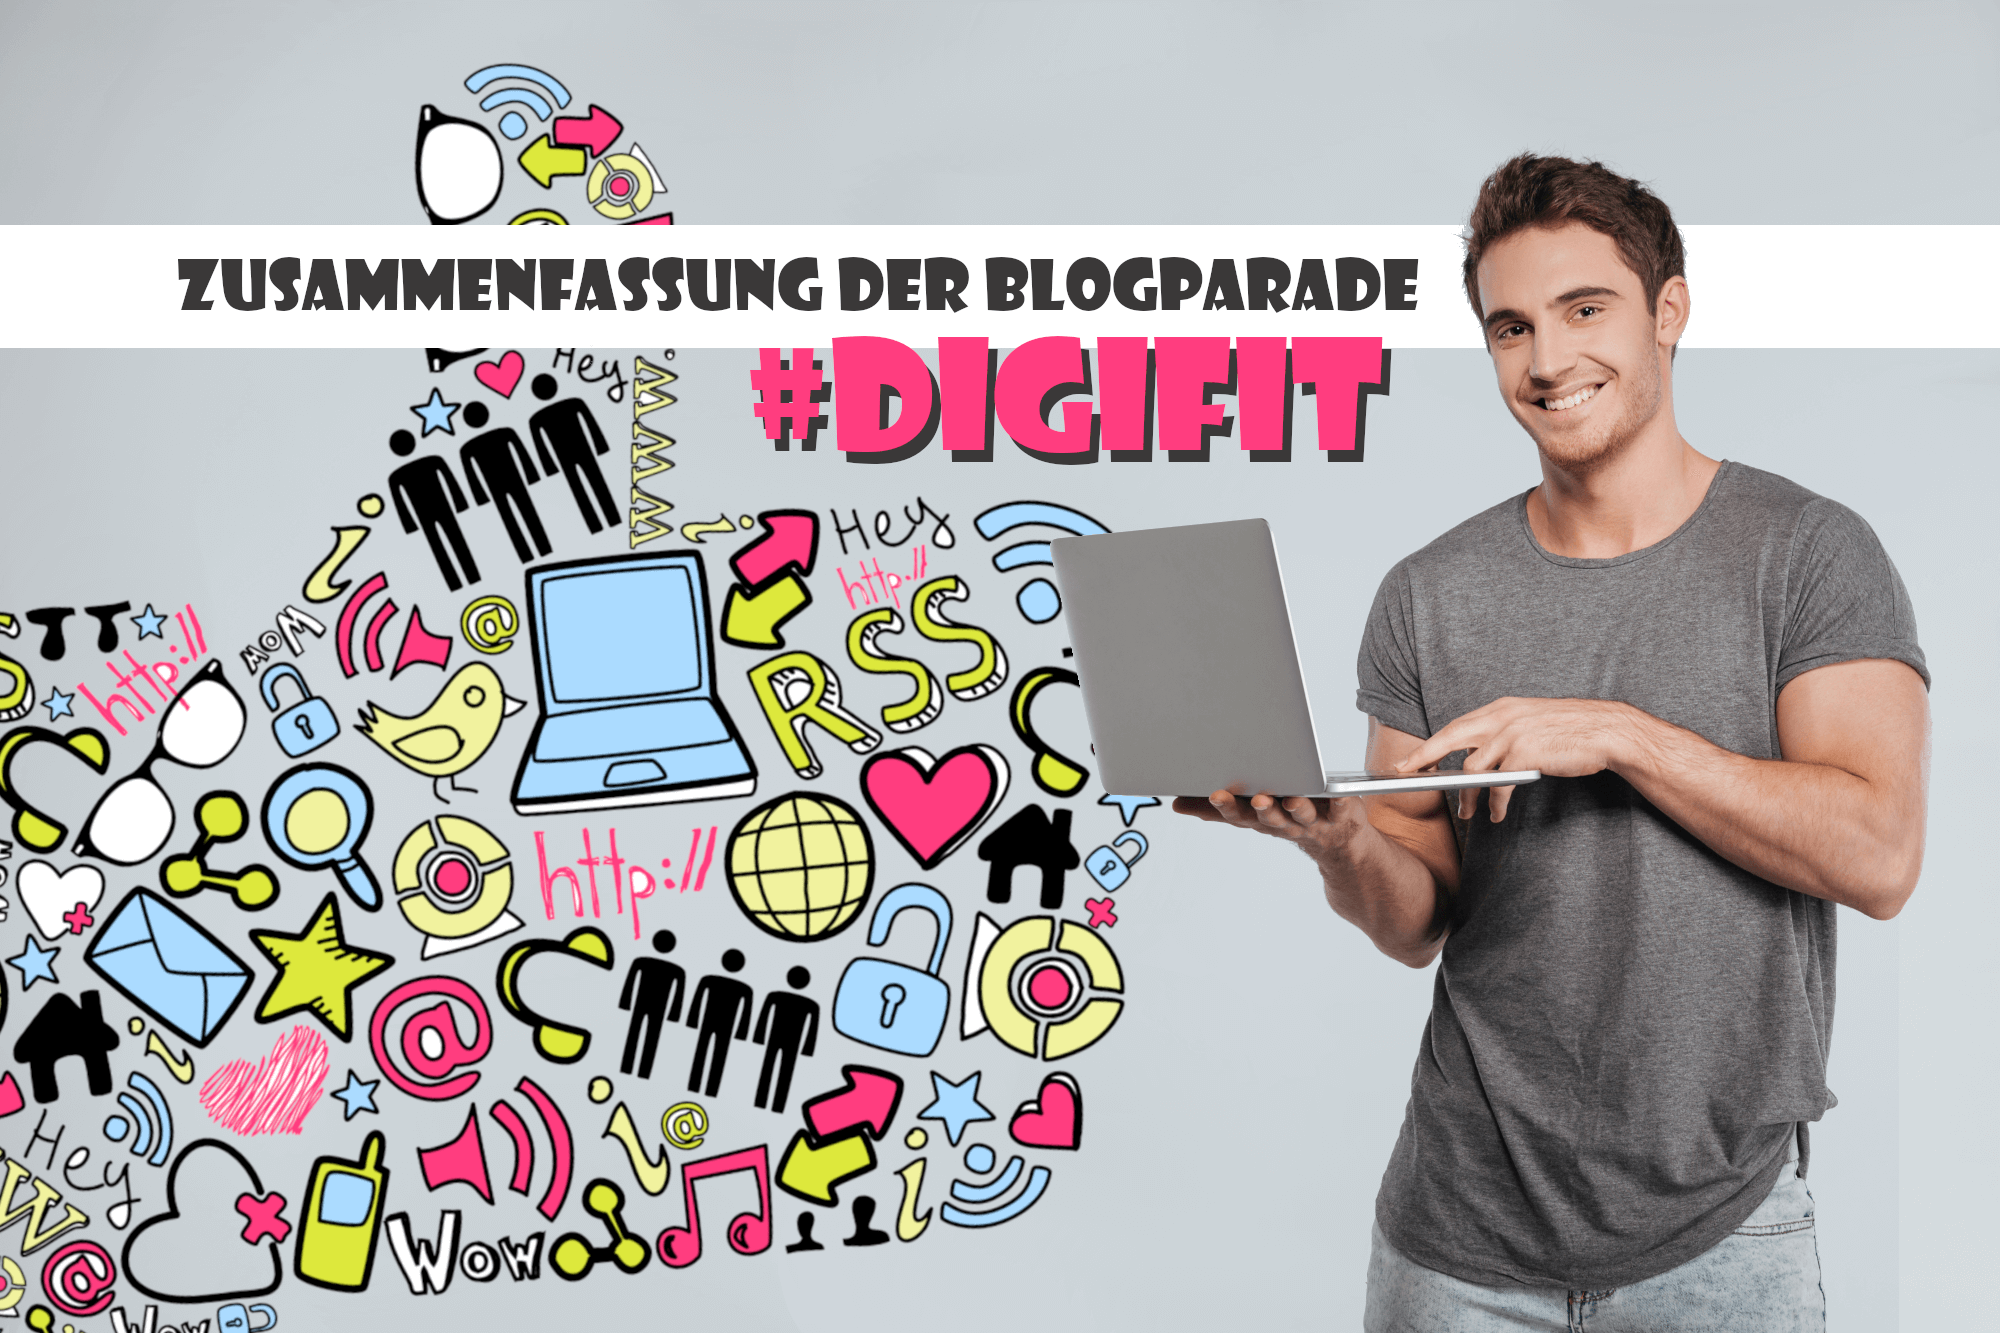 Die #digifit-Blogparade sammelte Ideen, um der Digitalisierung optimistisch entgegen zu sehen